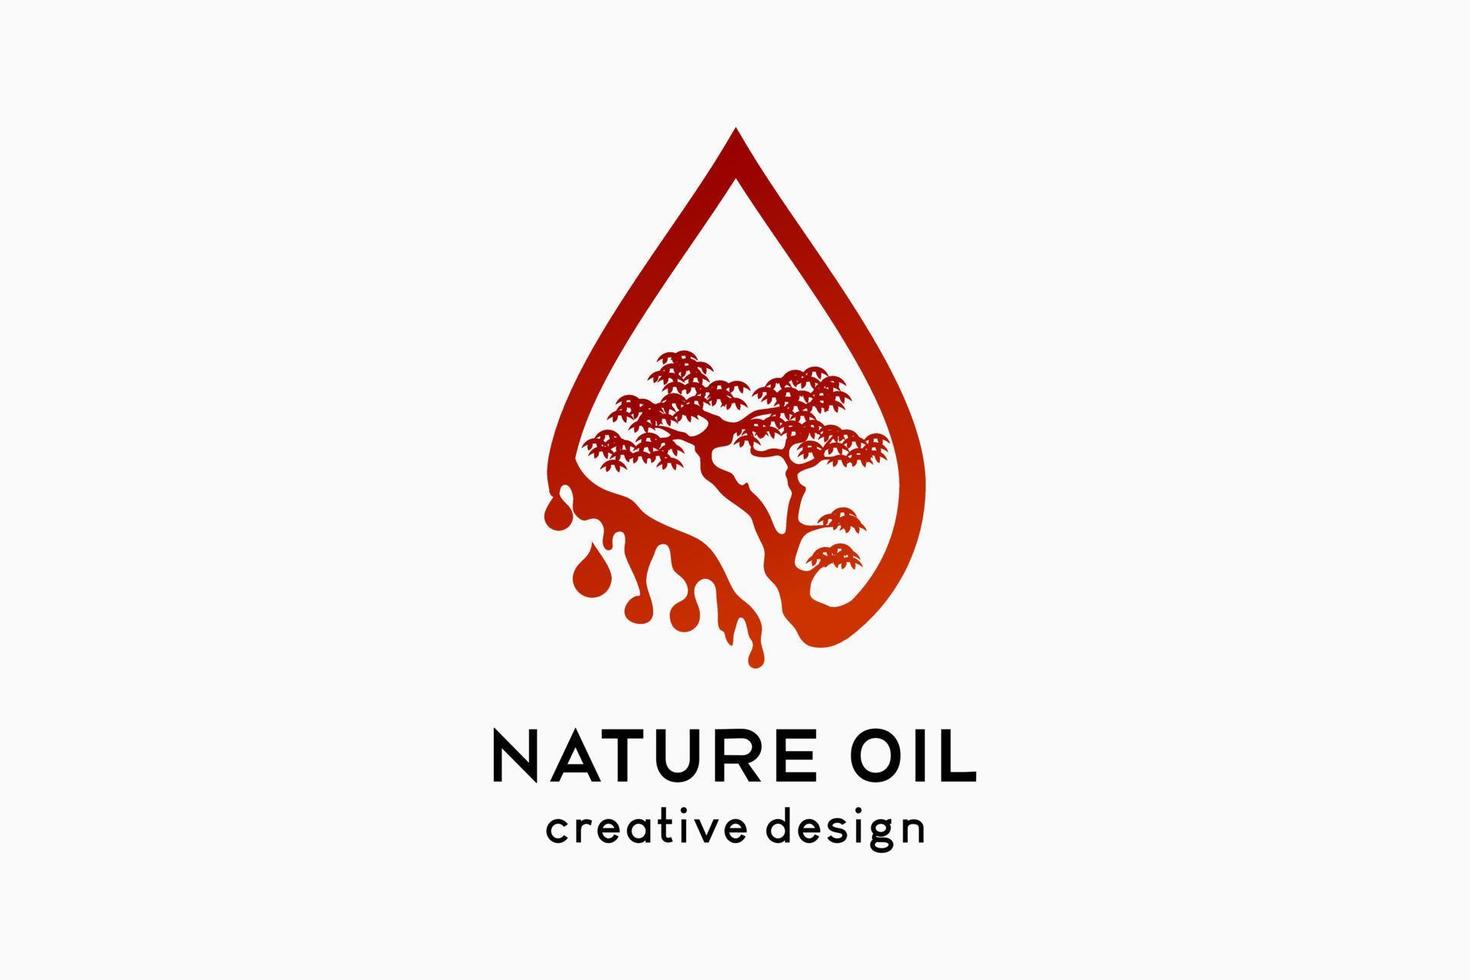 création de logo d'huile naturelle avec concept créatif, silhouette d'arbre combinée à l'icône de gouttes vecteur